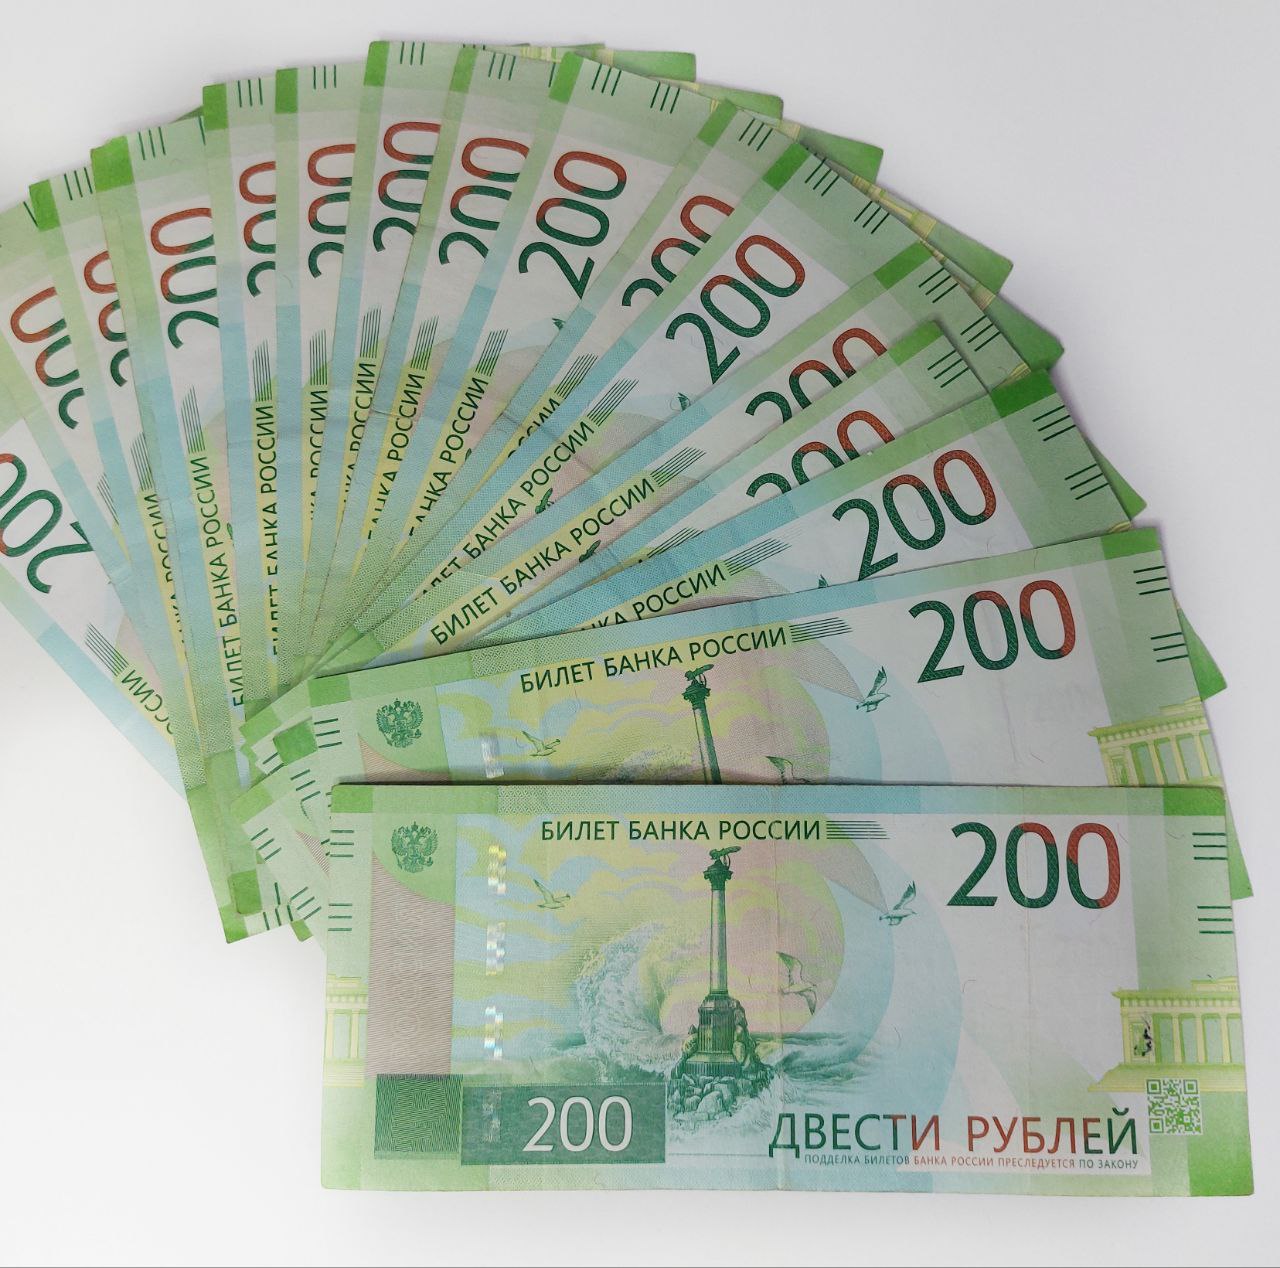 Эксперты озвучили правила выплаты алиментов мобилизованными лицами в РФ